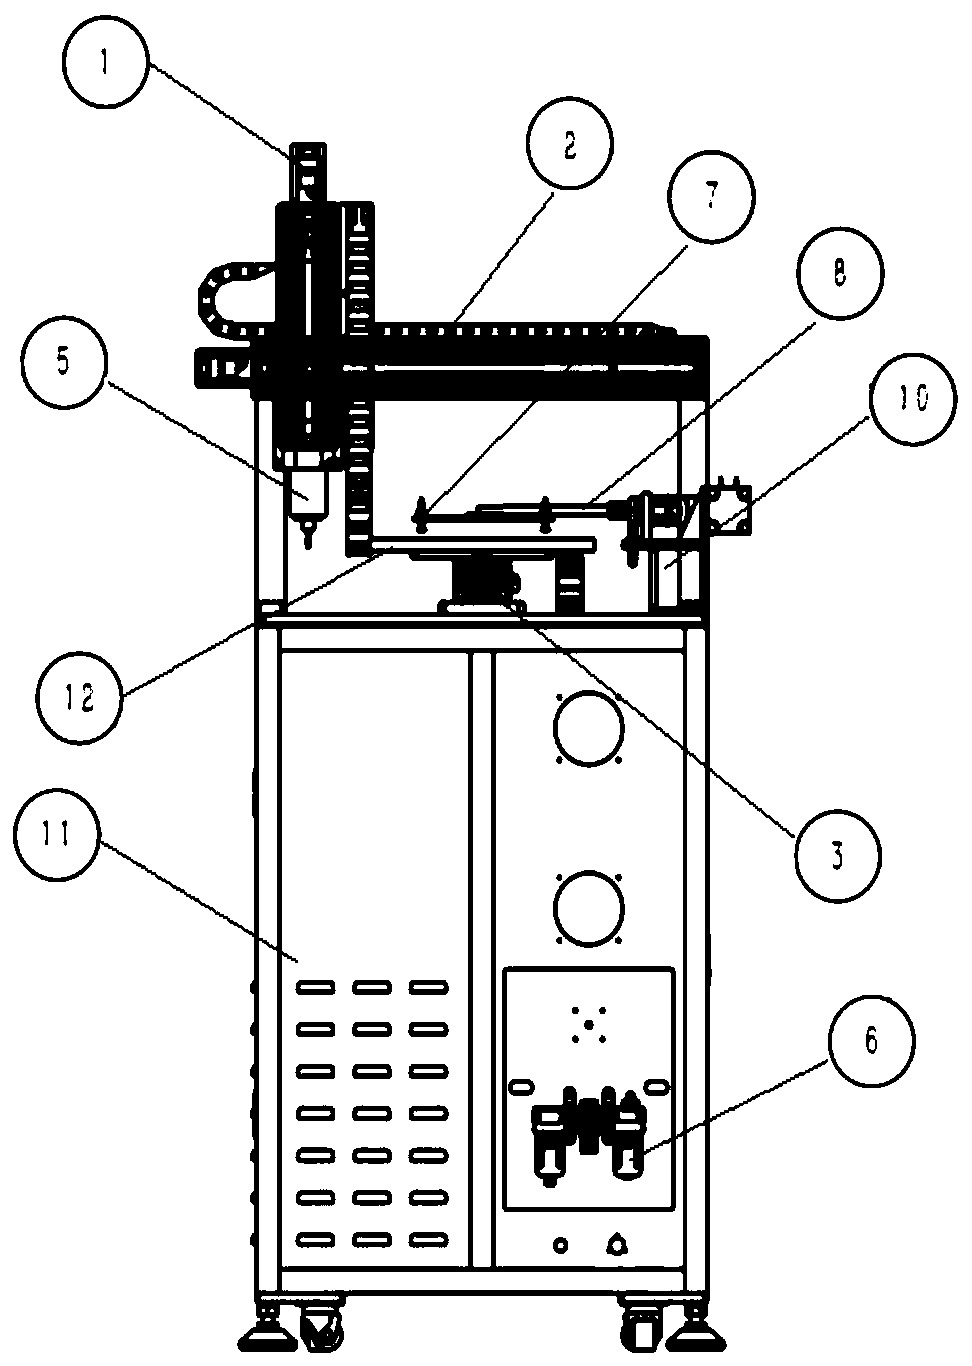 Plastic part milling machine